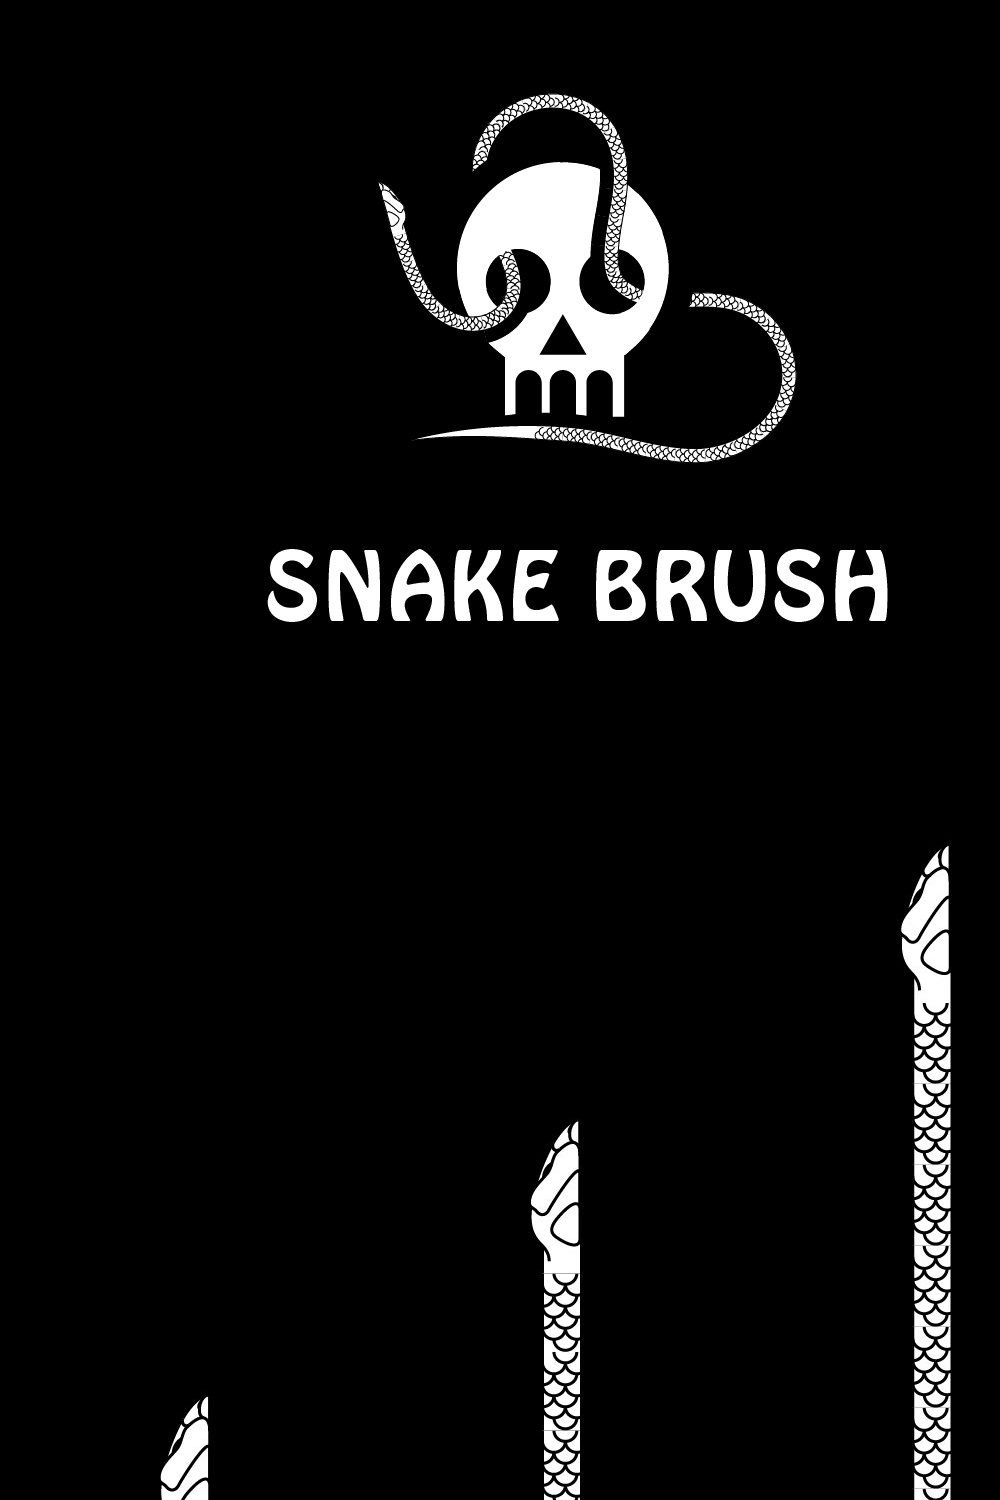 Snake Brush pinterest preview image.